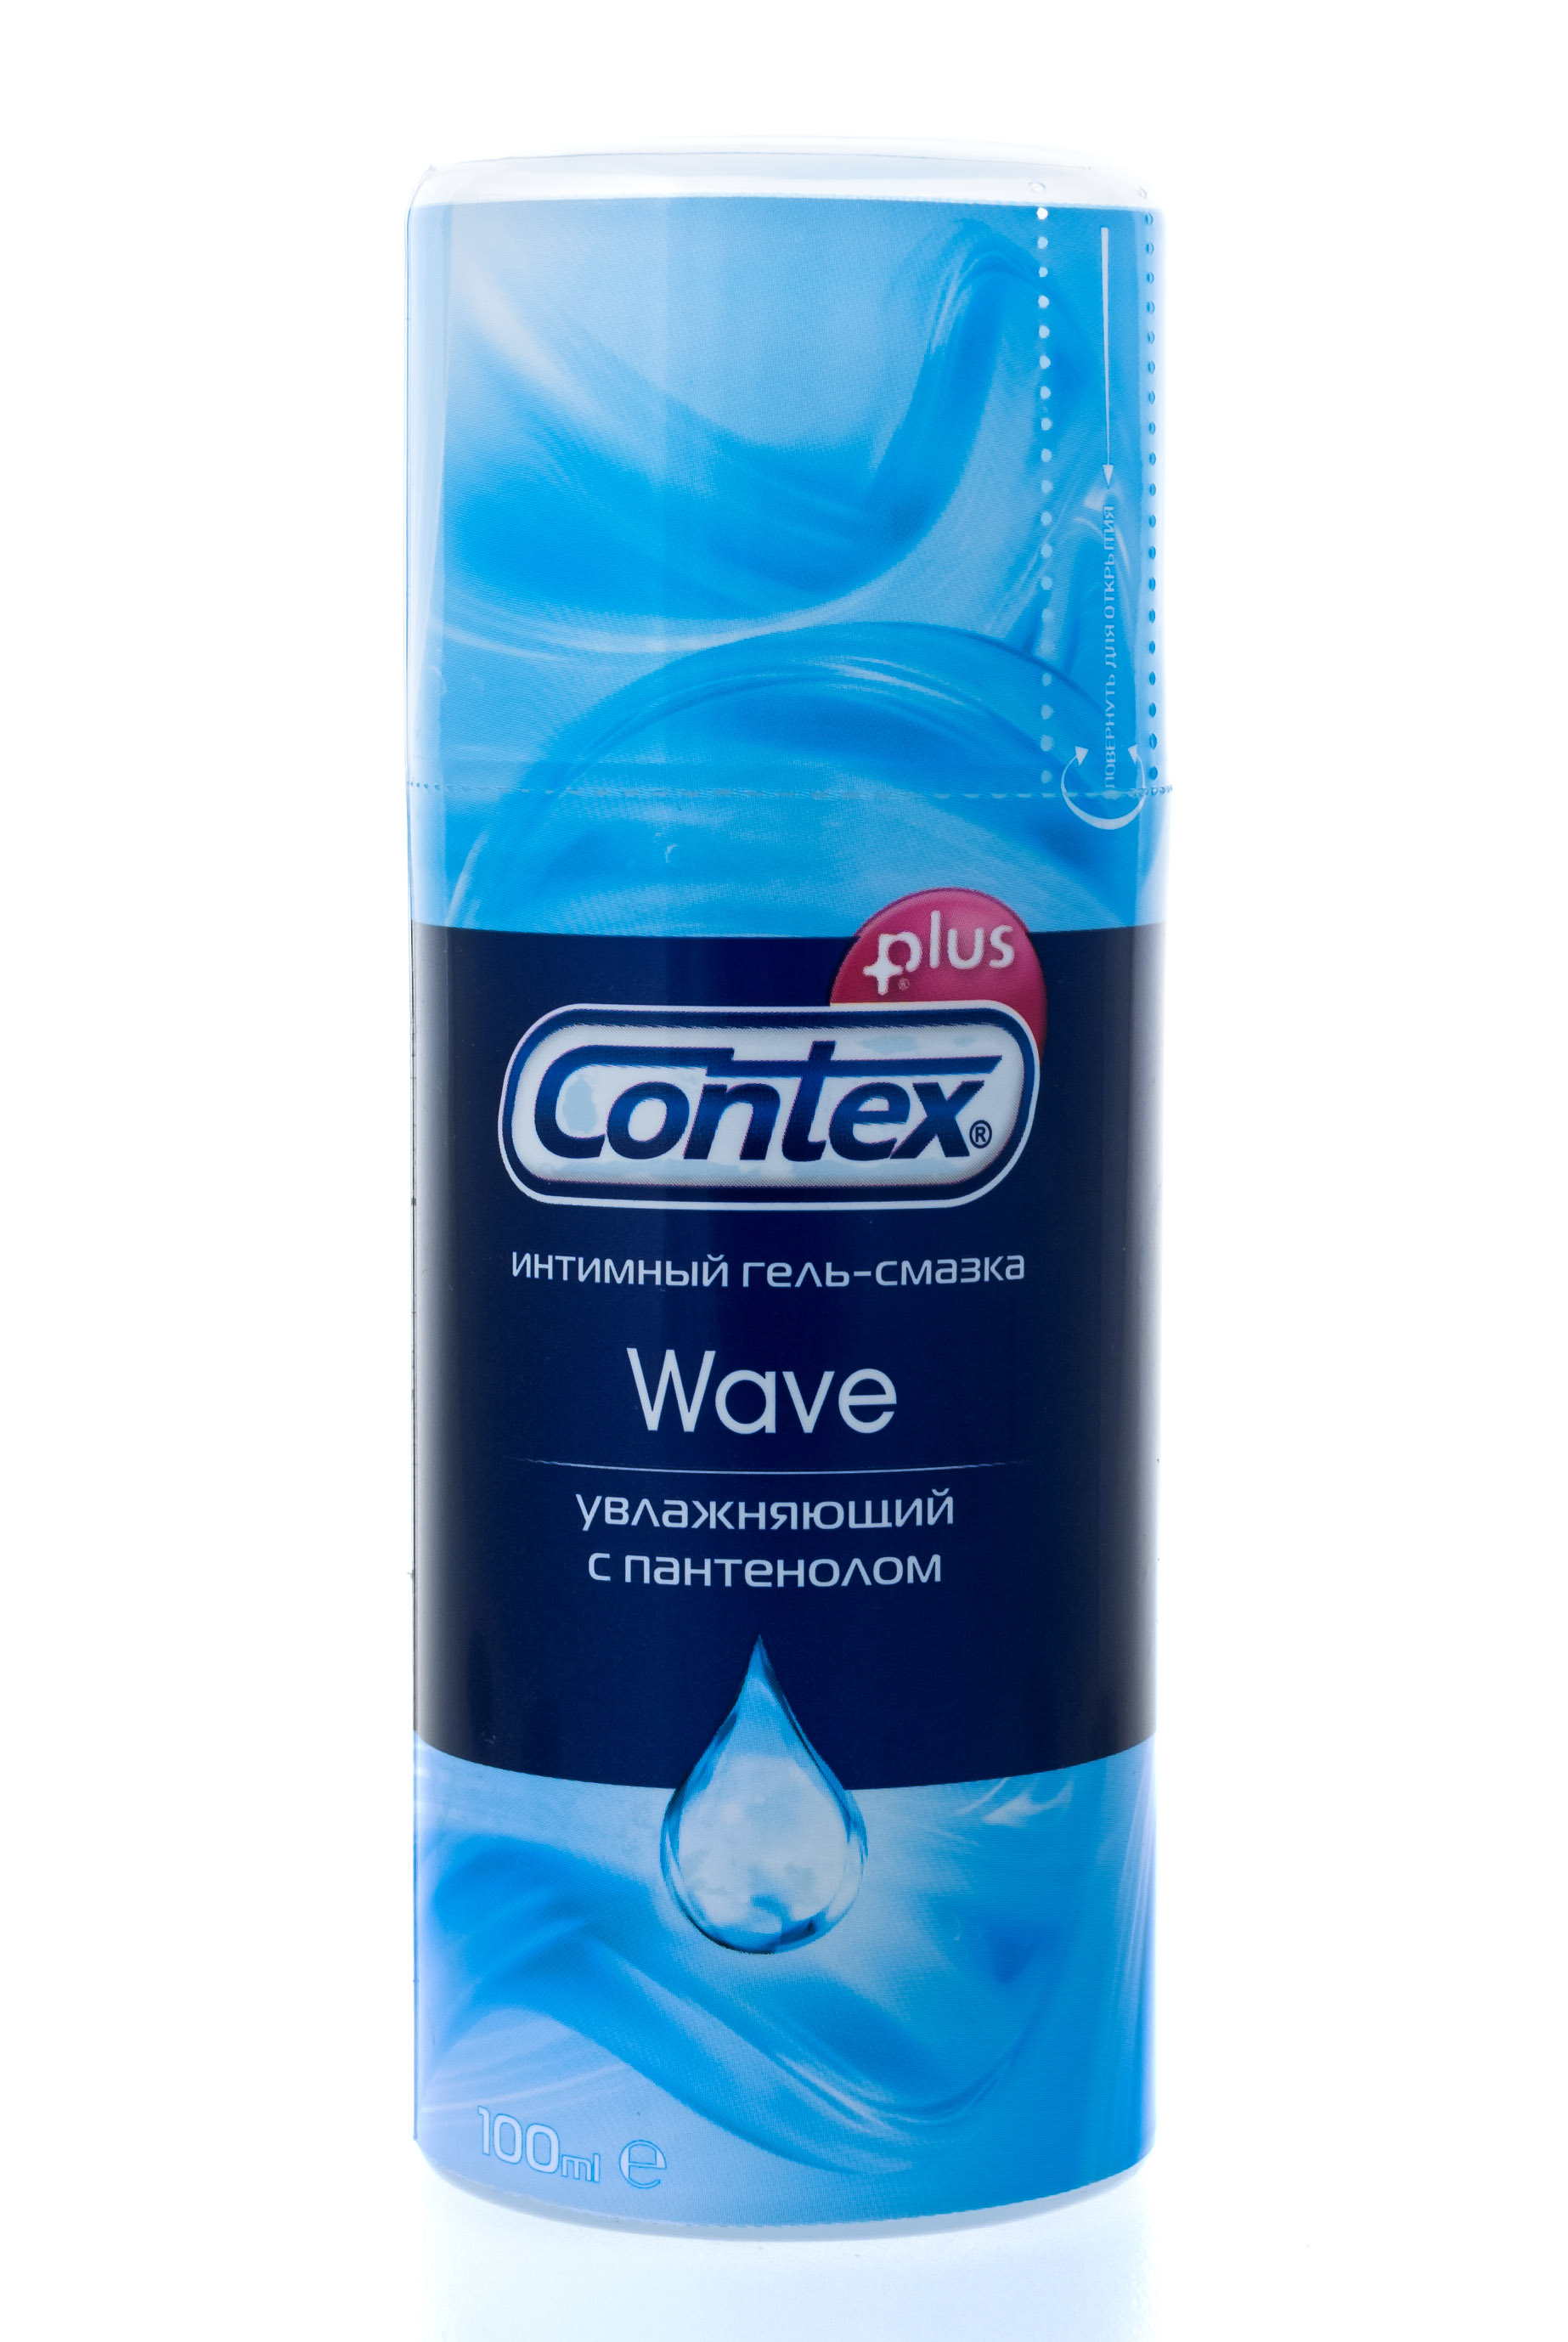 Contex Интимный гель-смазка Wave, 100 мл (Contex, Гель-смазк